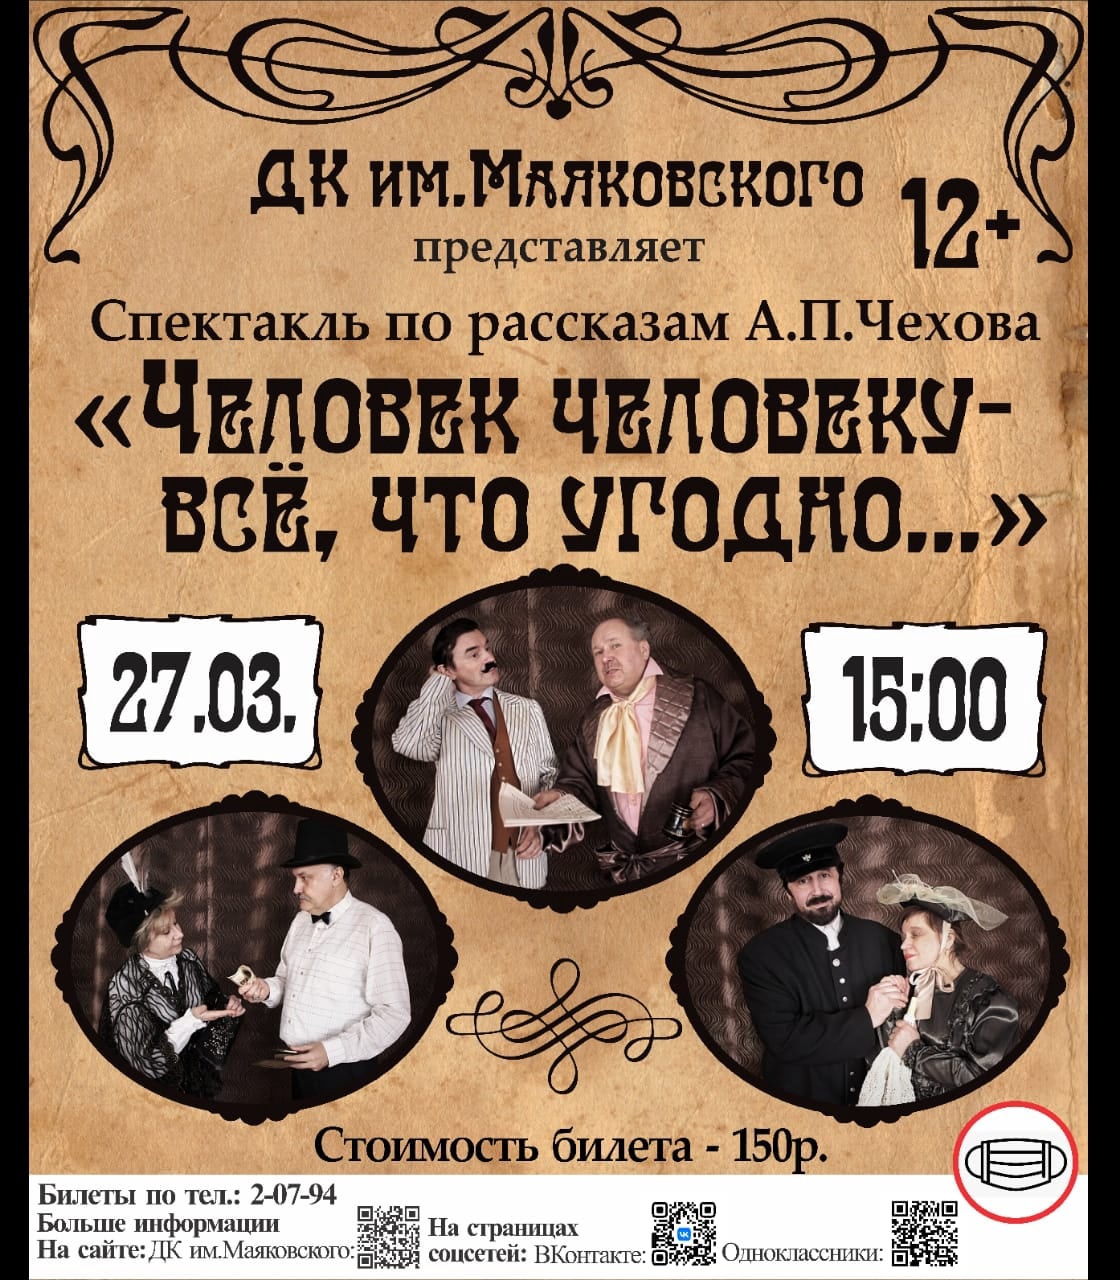 Каменчан приглашают на спектакль по рассказам Чехова